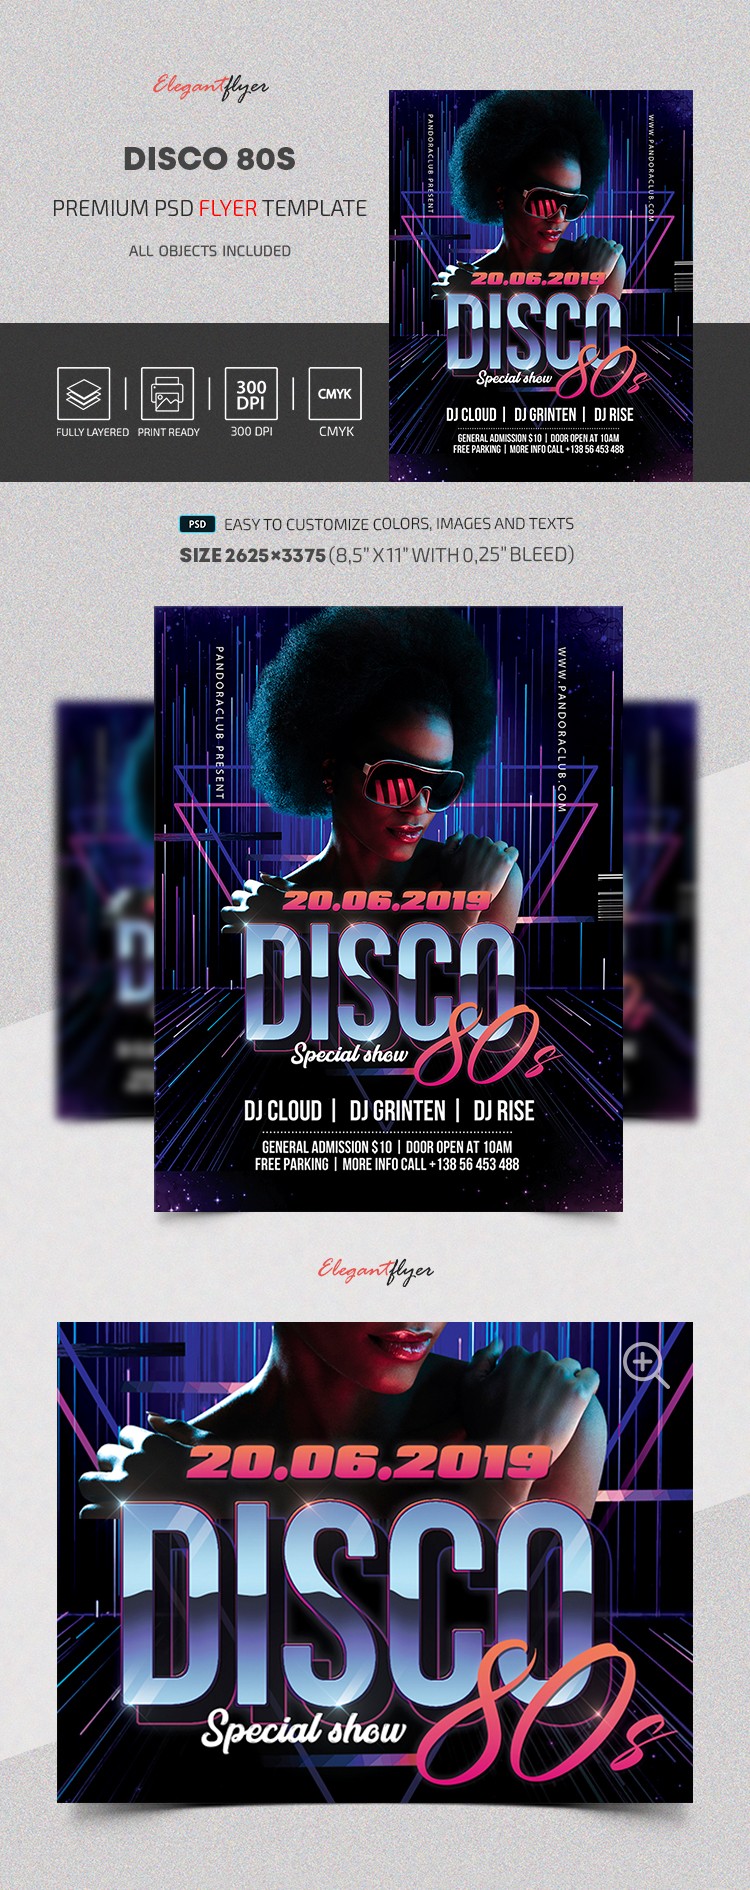 Disco de los 80s by ElegantFlyer